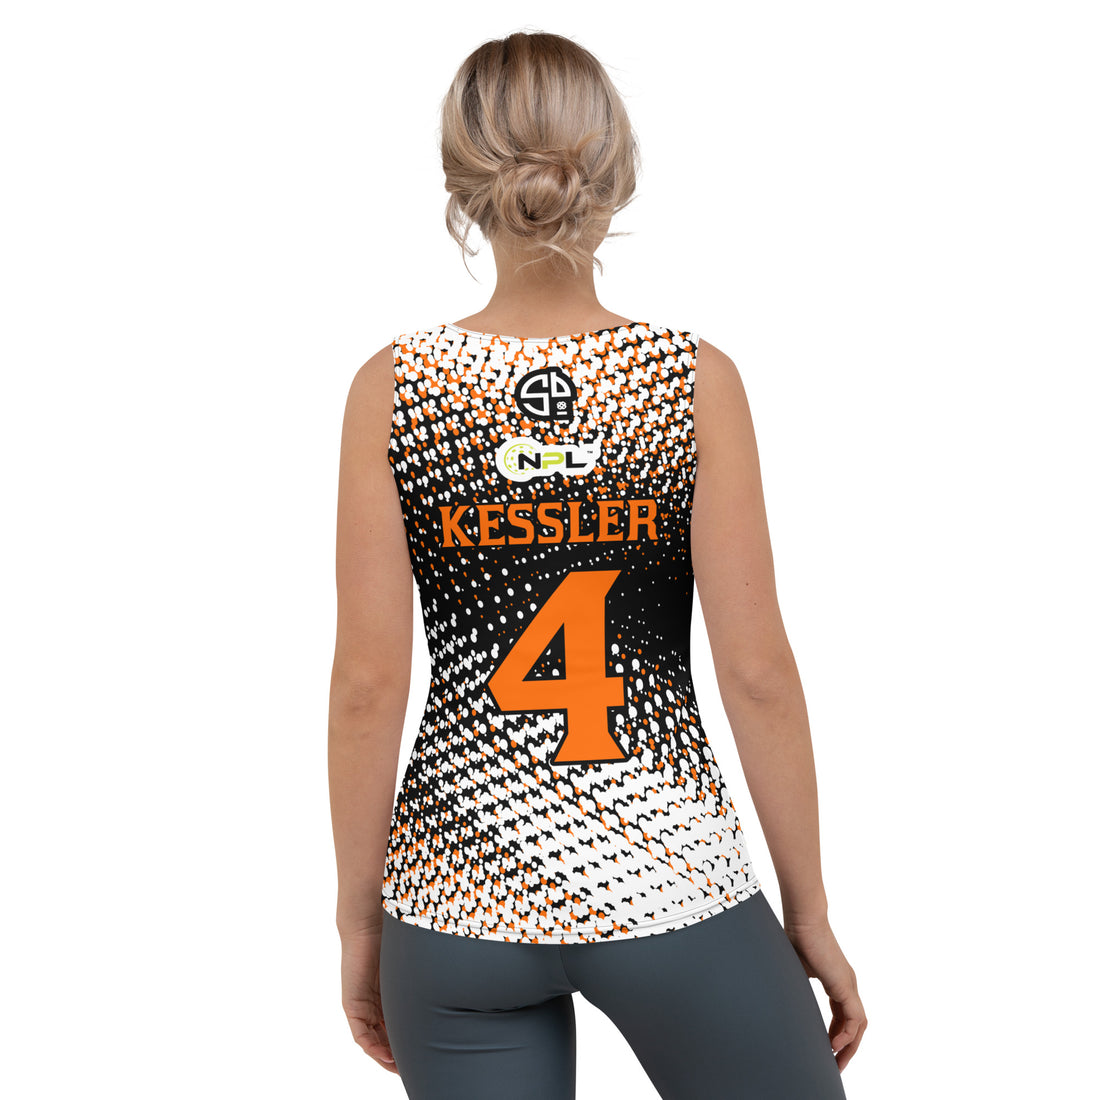 Cristen Kessler 4 Austin Ignite™ SKYblue™ 2023 Authentic Sleeveless Jersey in Black, Orange & White